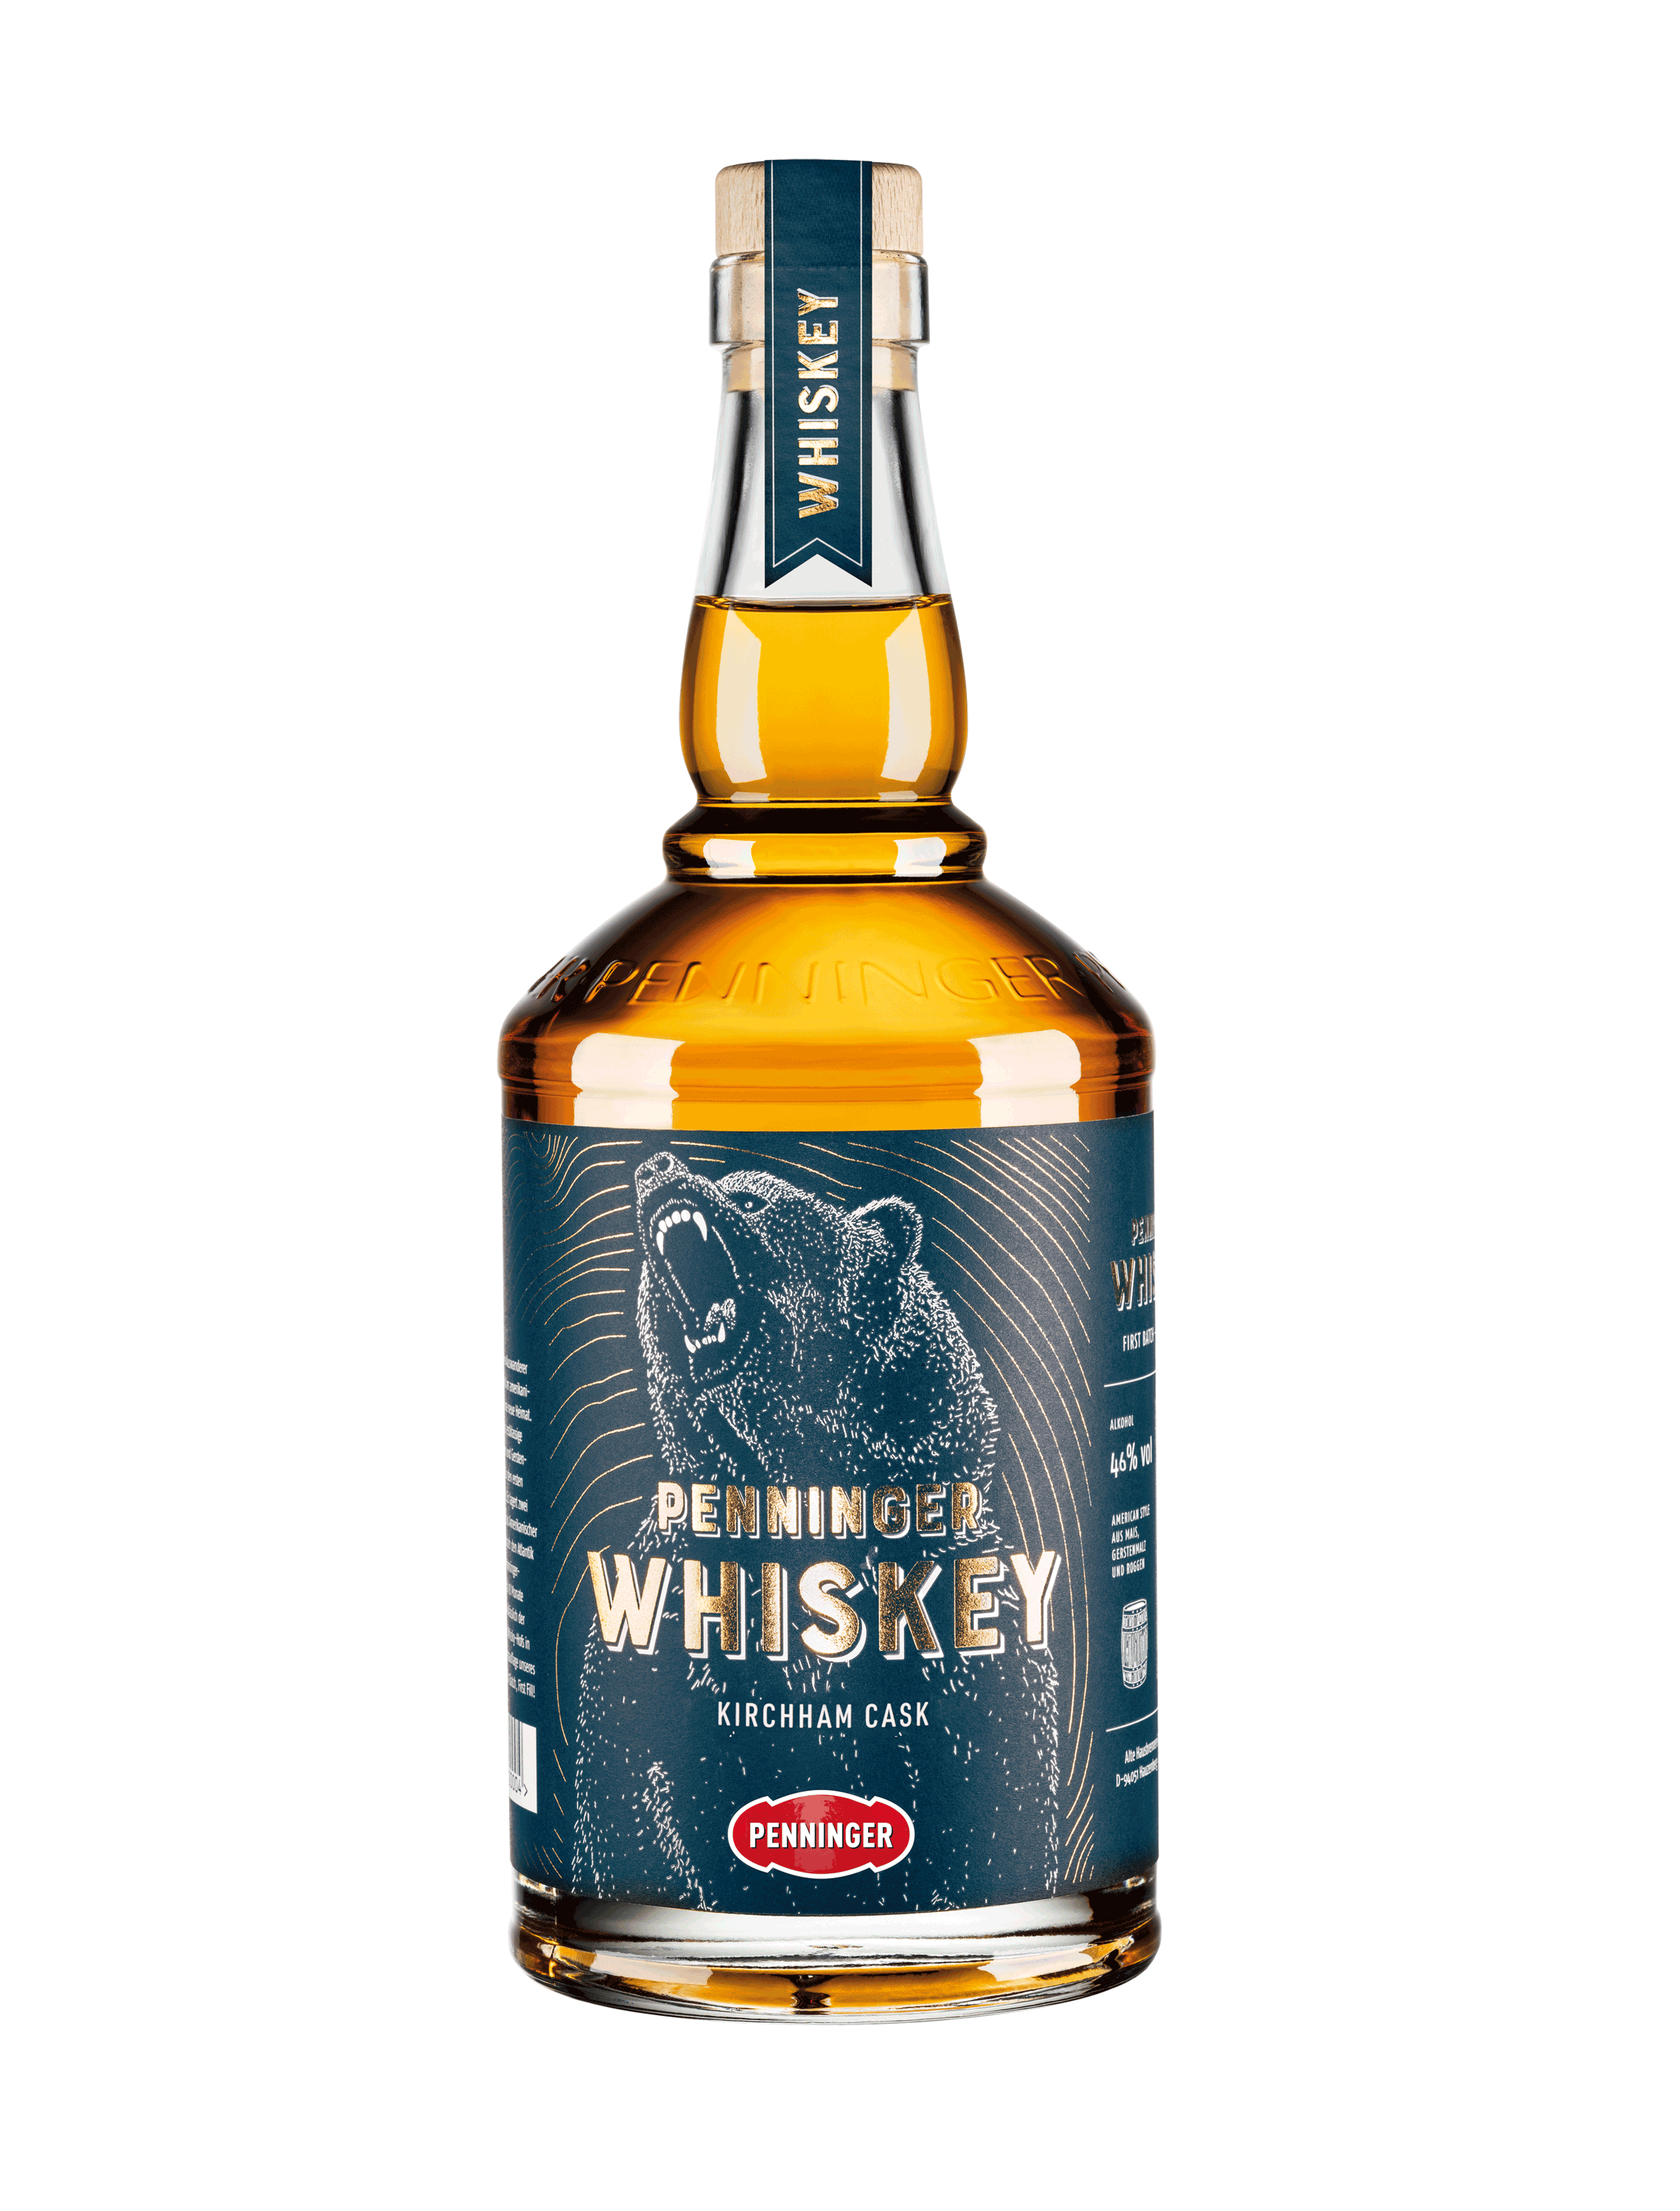 Penninger Whiskey - Kirchham Cask